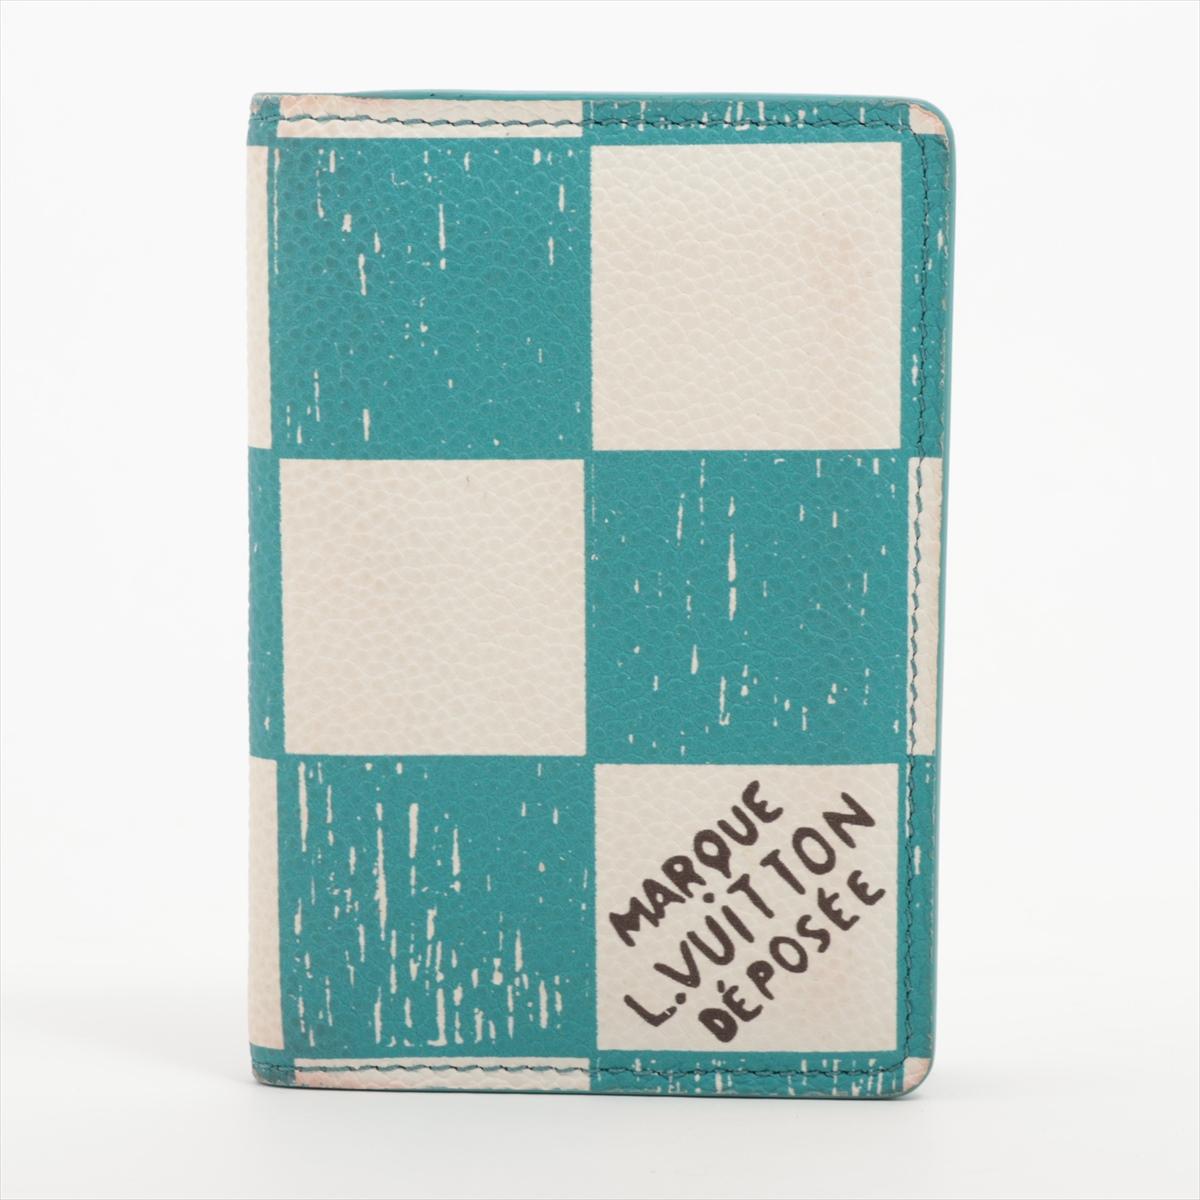 Le porte-cartes de poche de Louis Vuitton Damier en turquoise est un accessoire élégant et compact qui combine sans effort la fonctionnalité et une touche de couleur. Fabriqué avec précision, ce porte-cartes arbore le motif emblématique de Damier